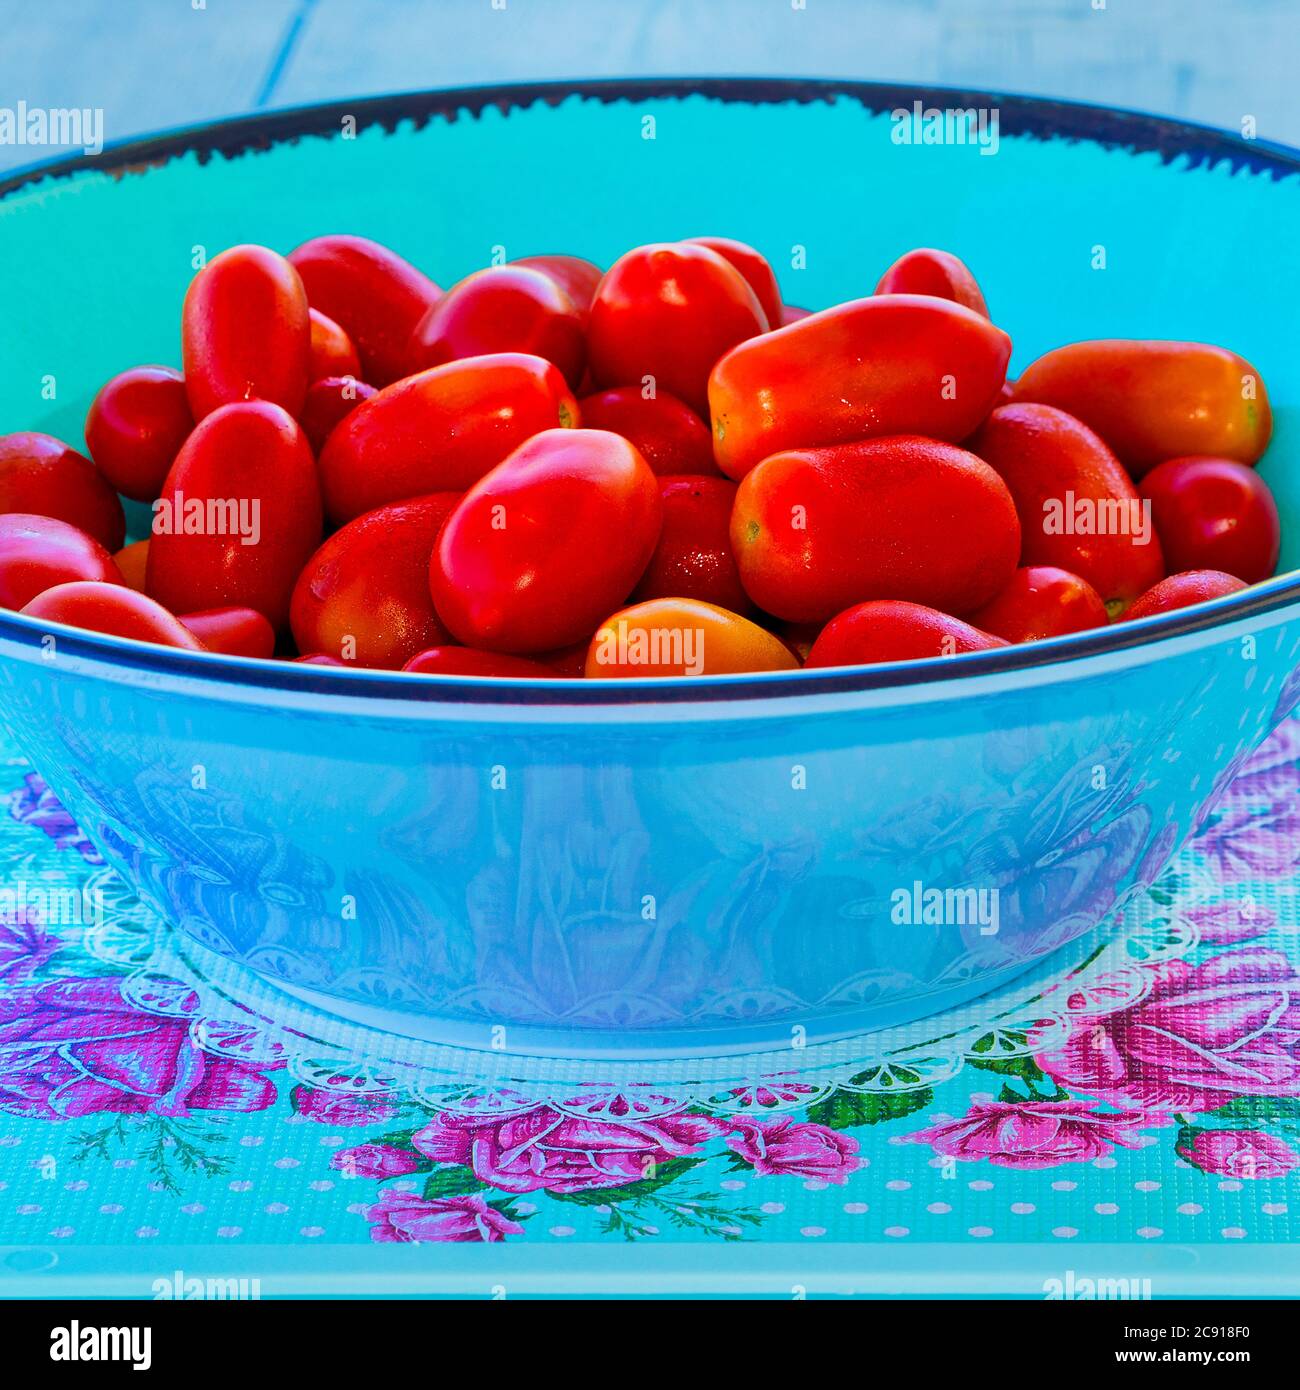 Tomates de cereza. Jugosos tomates cherry rojos en un plato de ensalada de color turquesa. Disparo macro. Imagen de stock Foto de stock